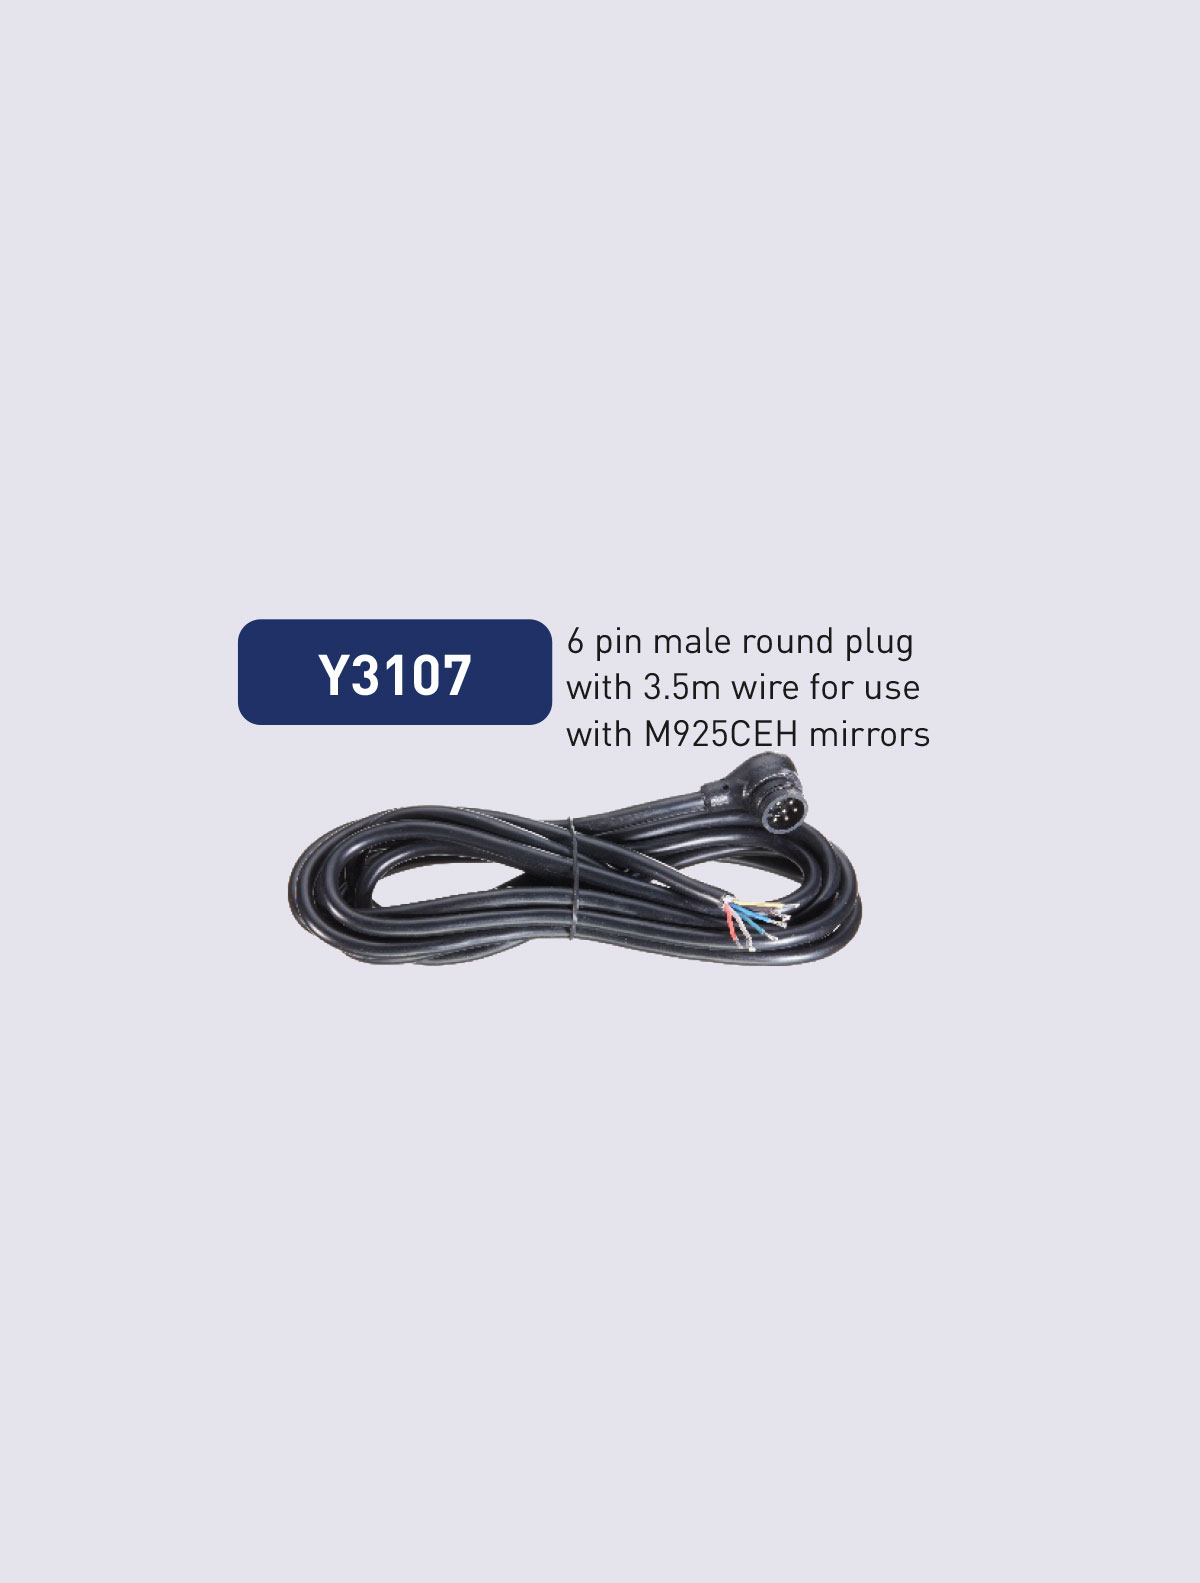 Y3107 cable